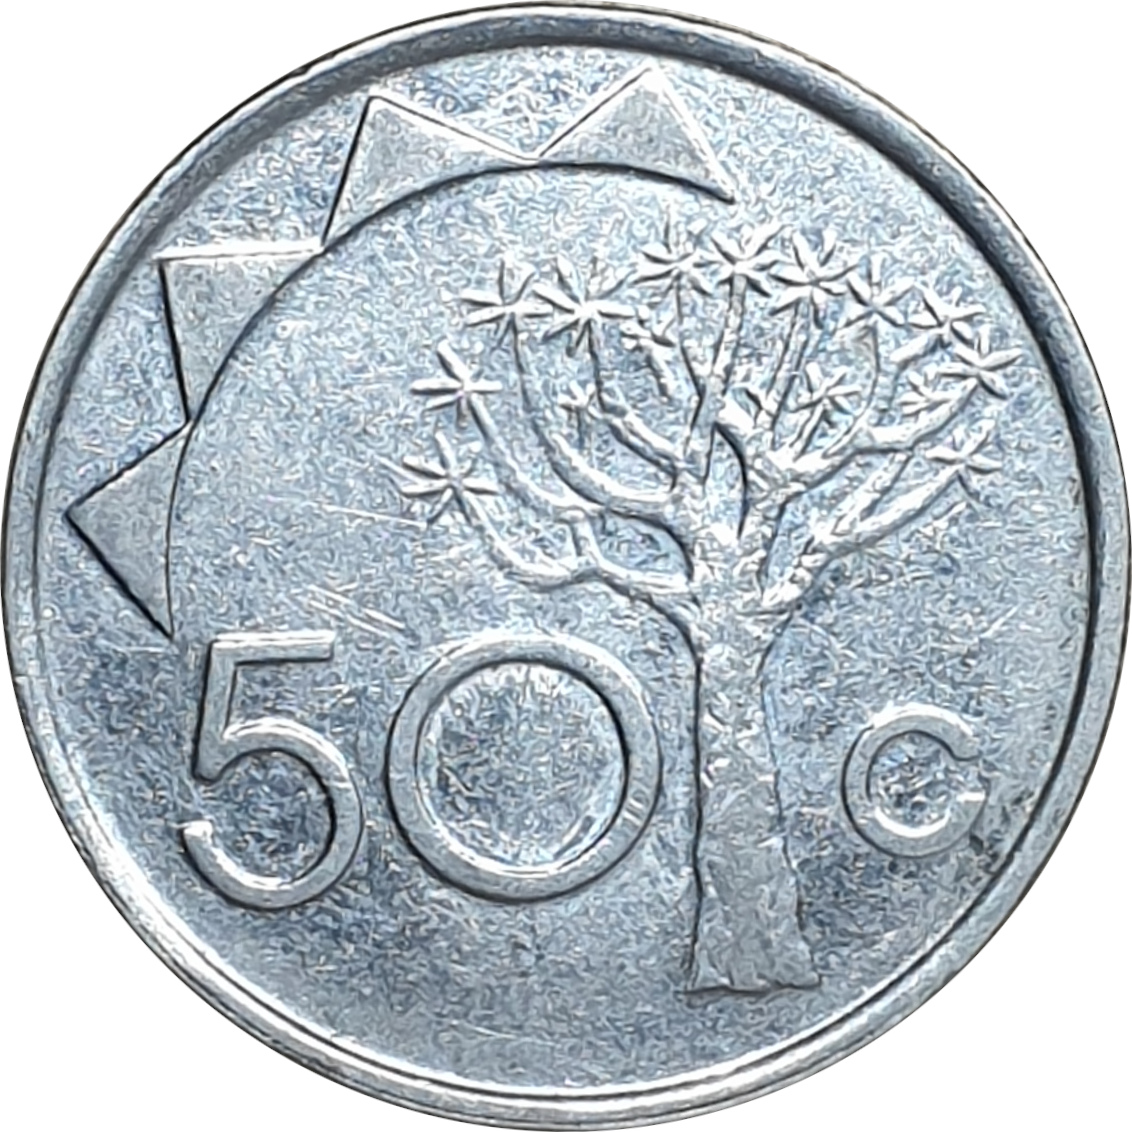 50 cents - Tree